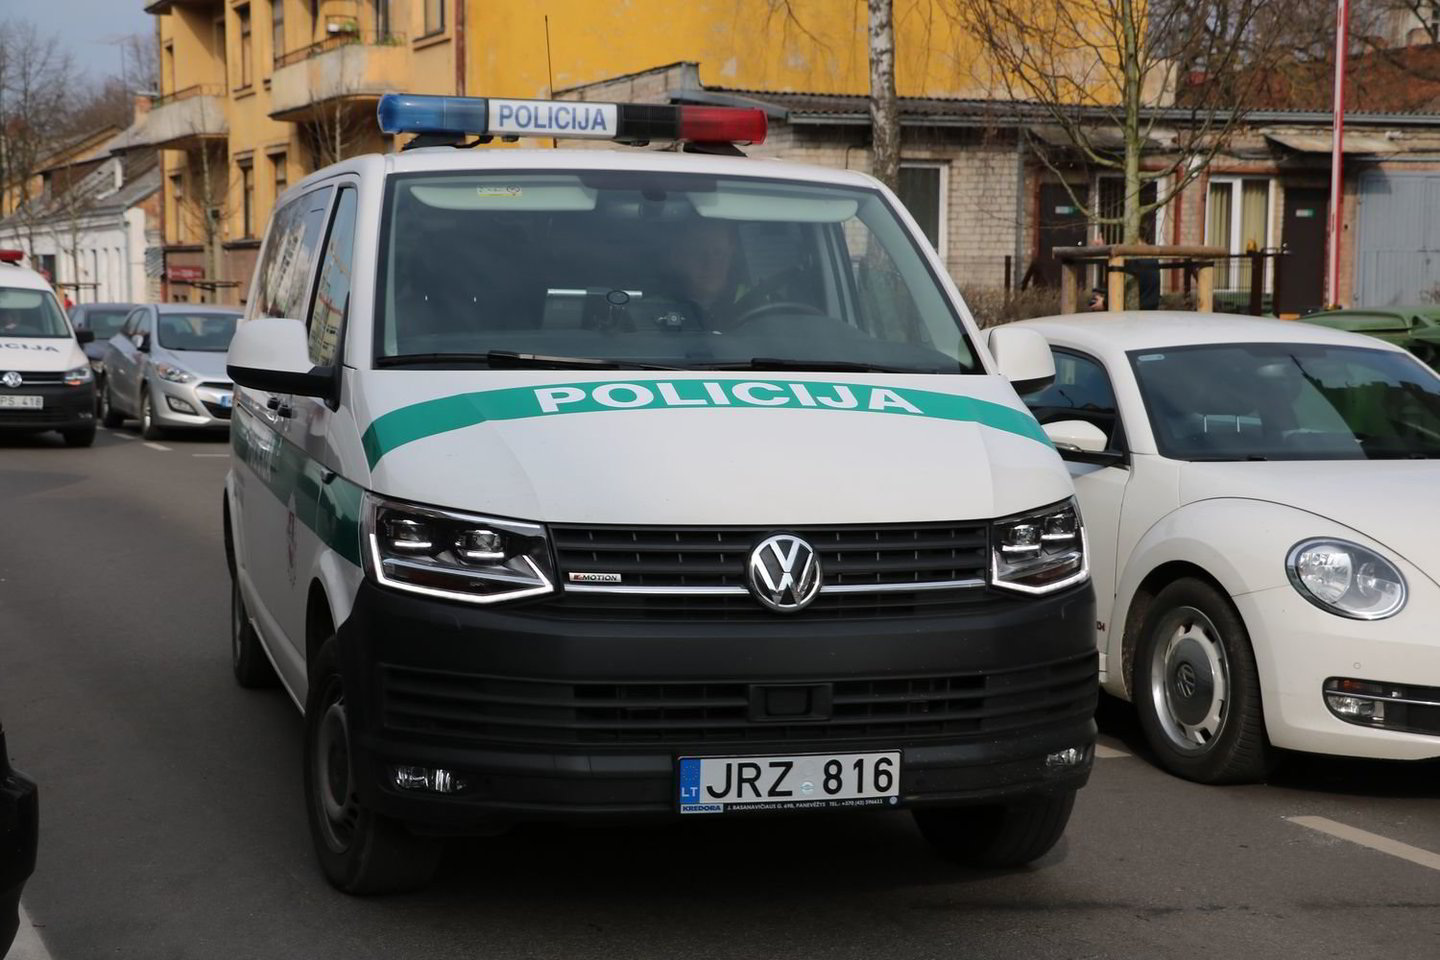  Kauno apskrities policijos pareigūnai sėdo į naujus automobilius. <br> Kauno apskr. policijos nuotr.